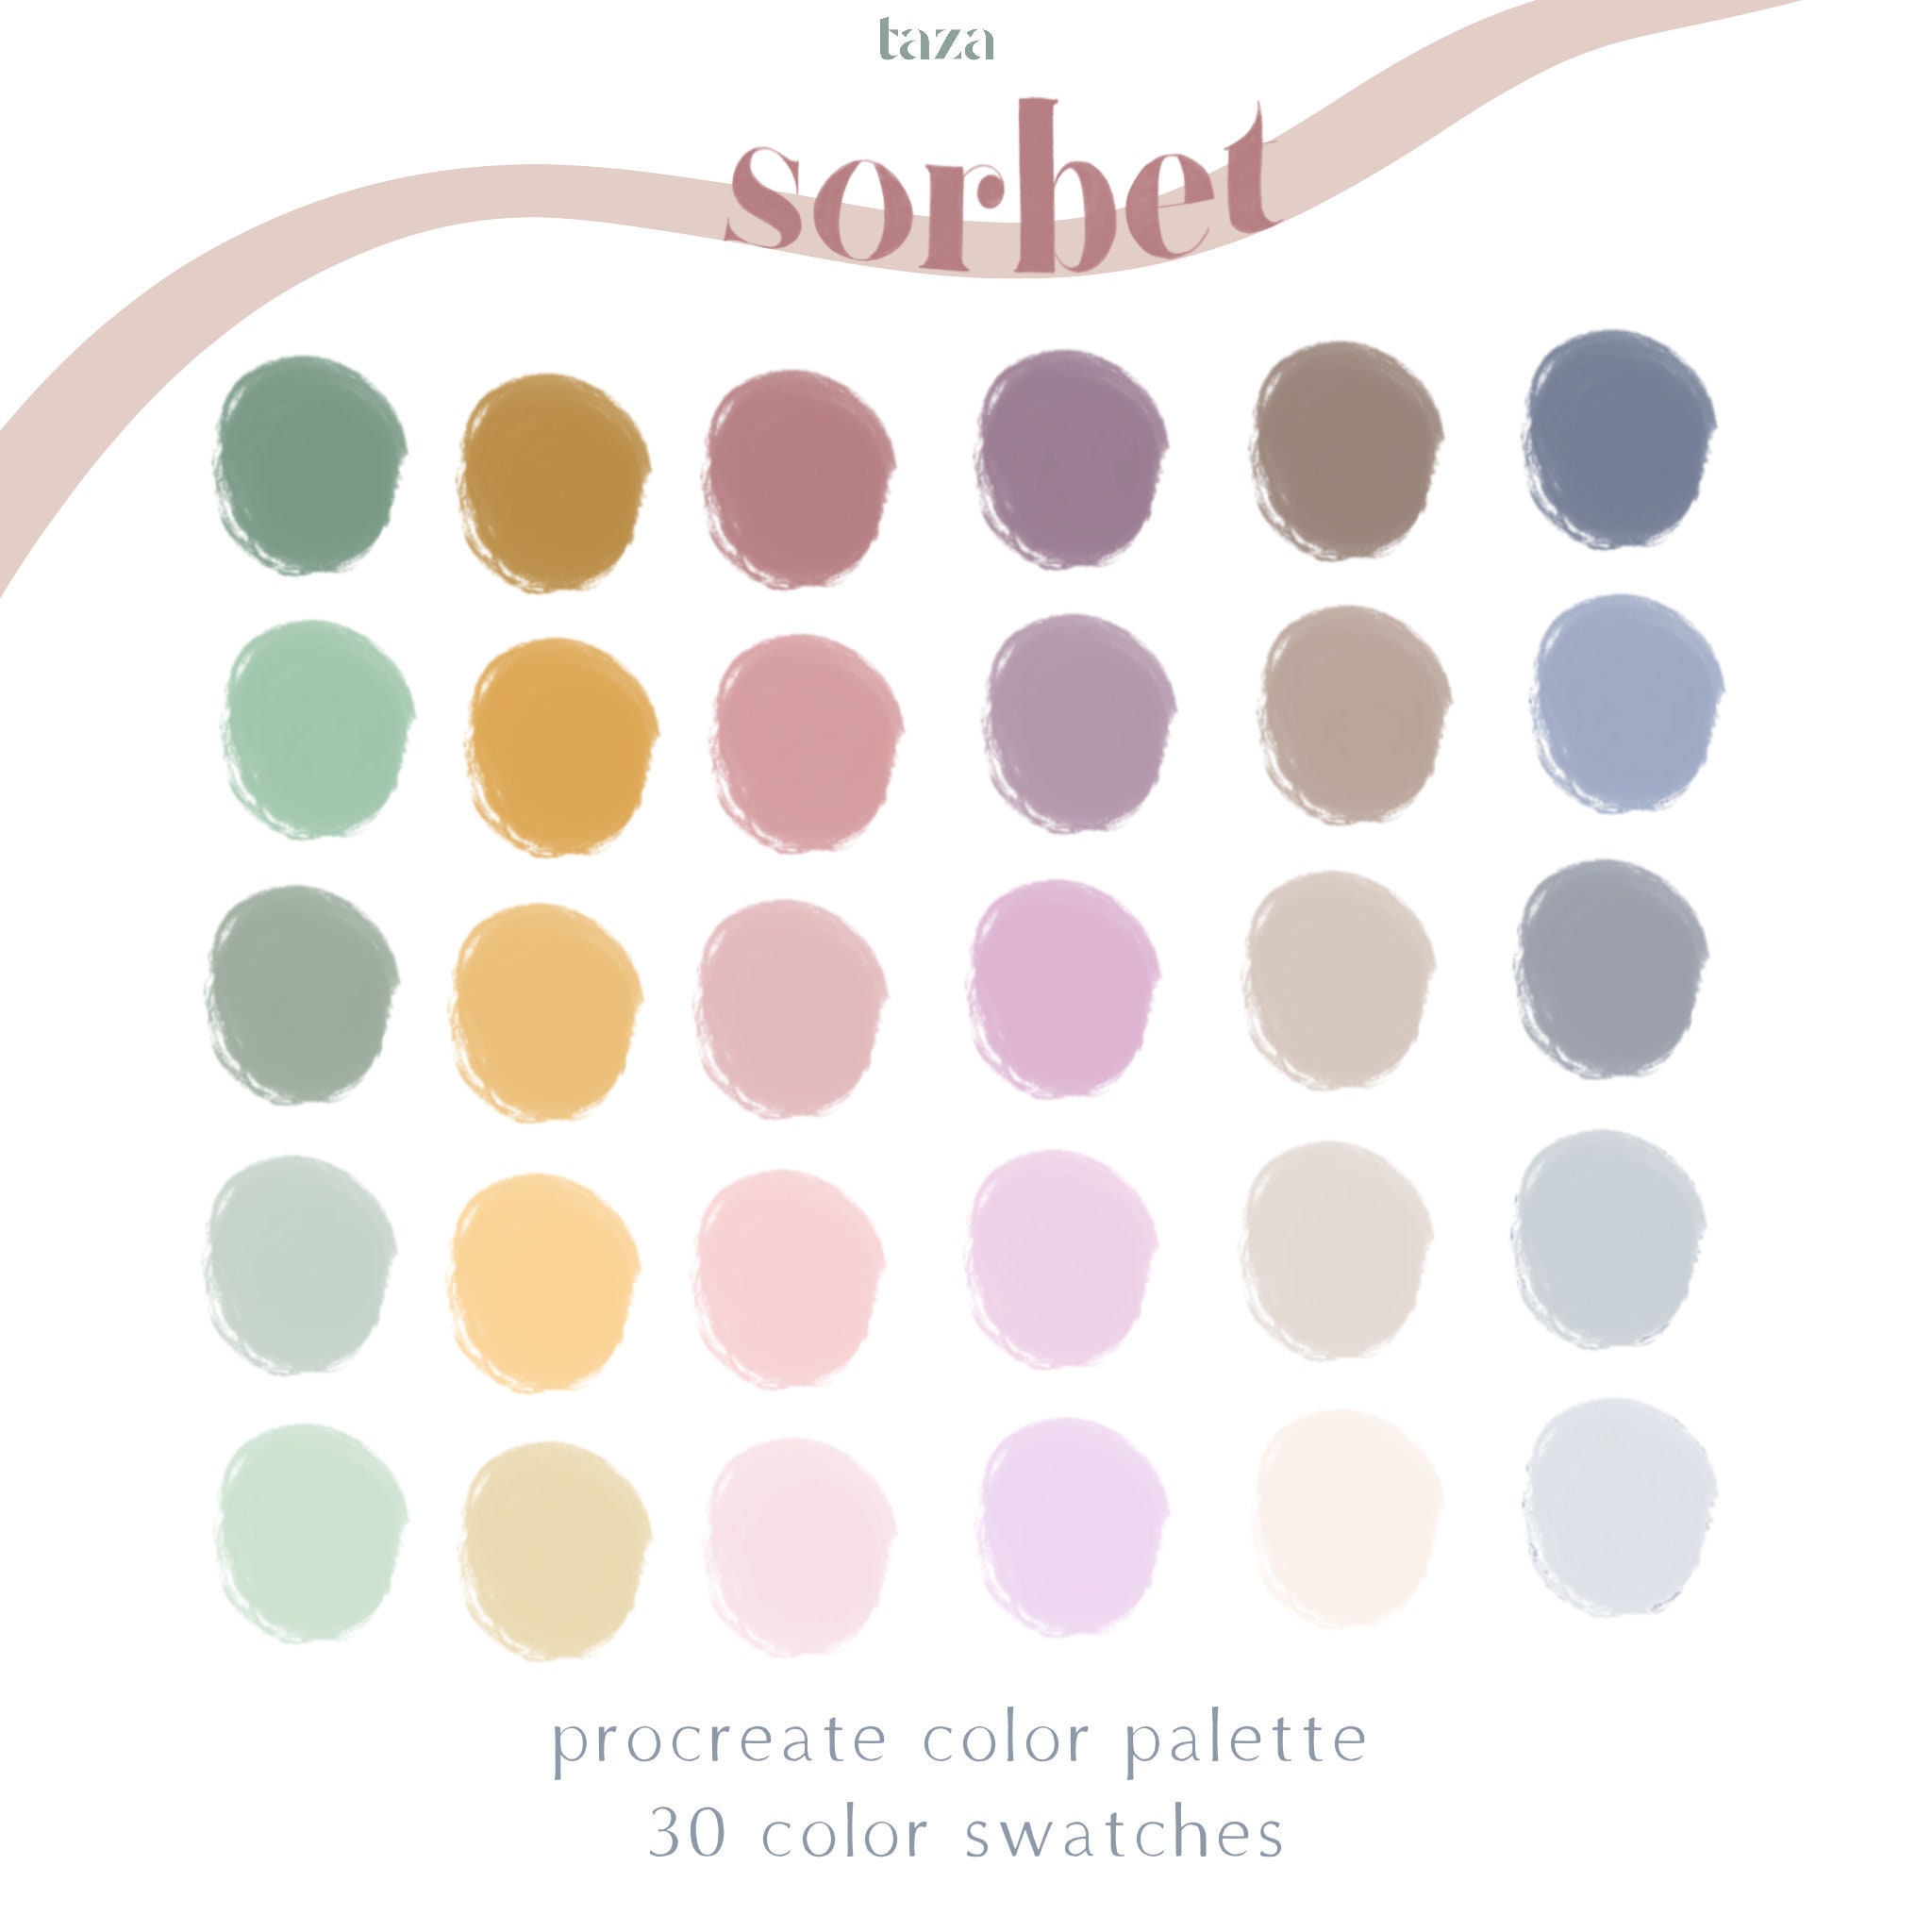 Sorbet procreate color palette color swtach color | Etsy